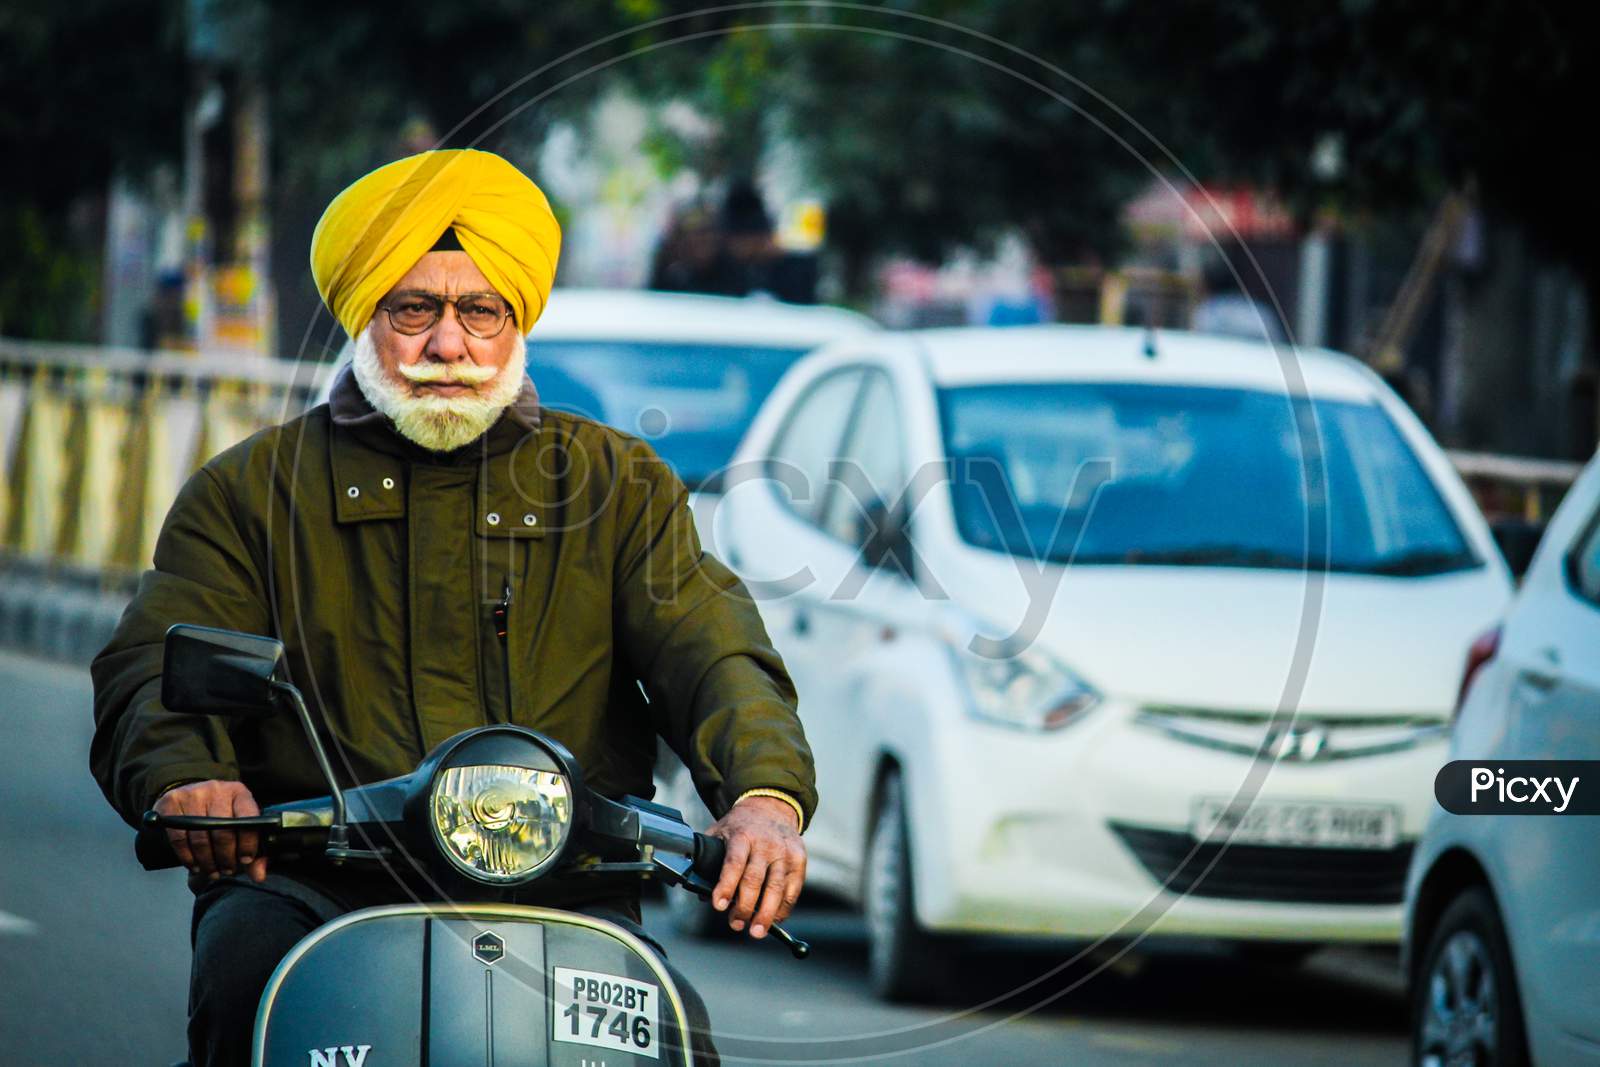 Old man riding Bike at Amritsar